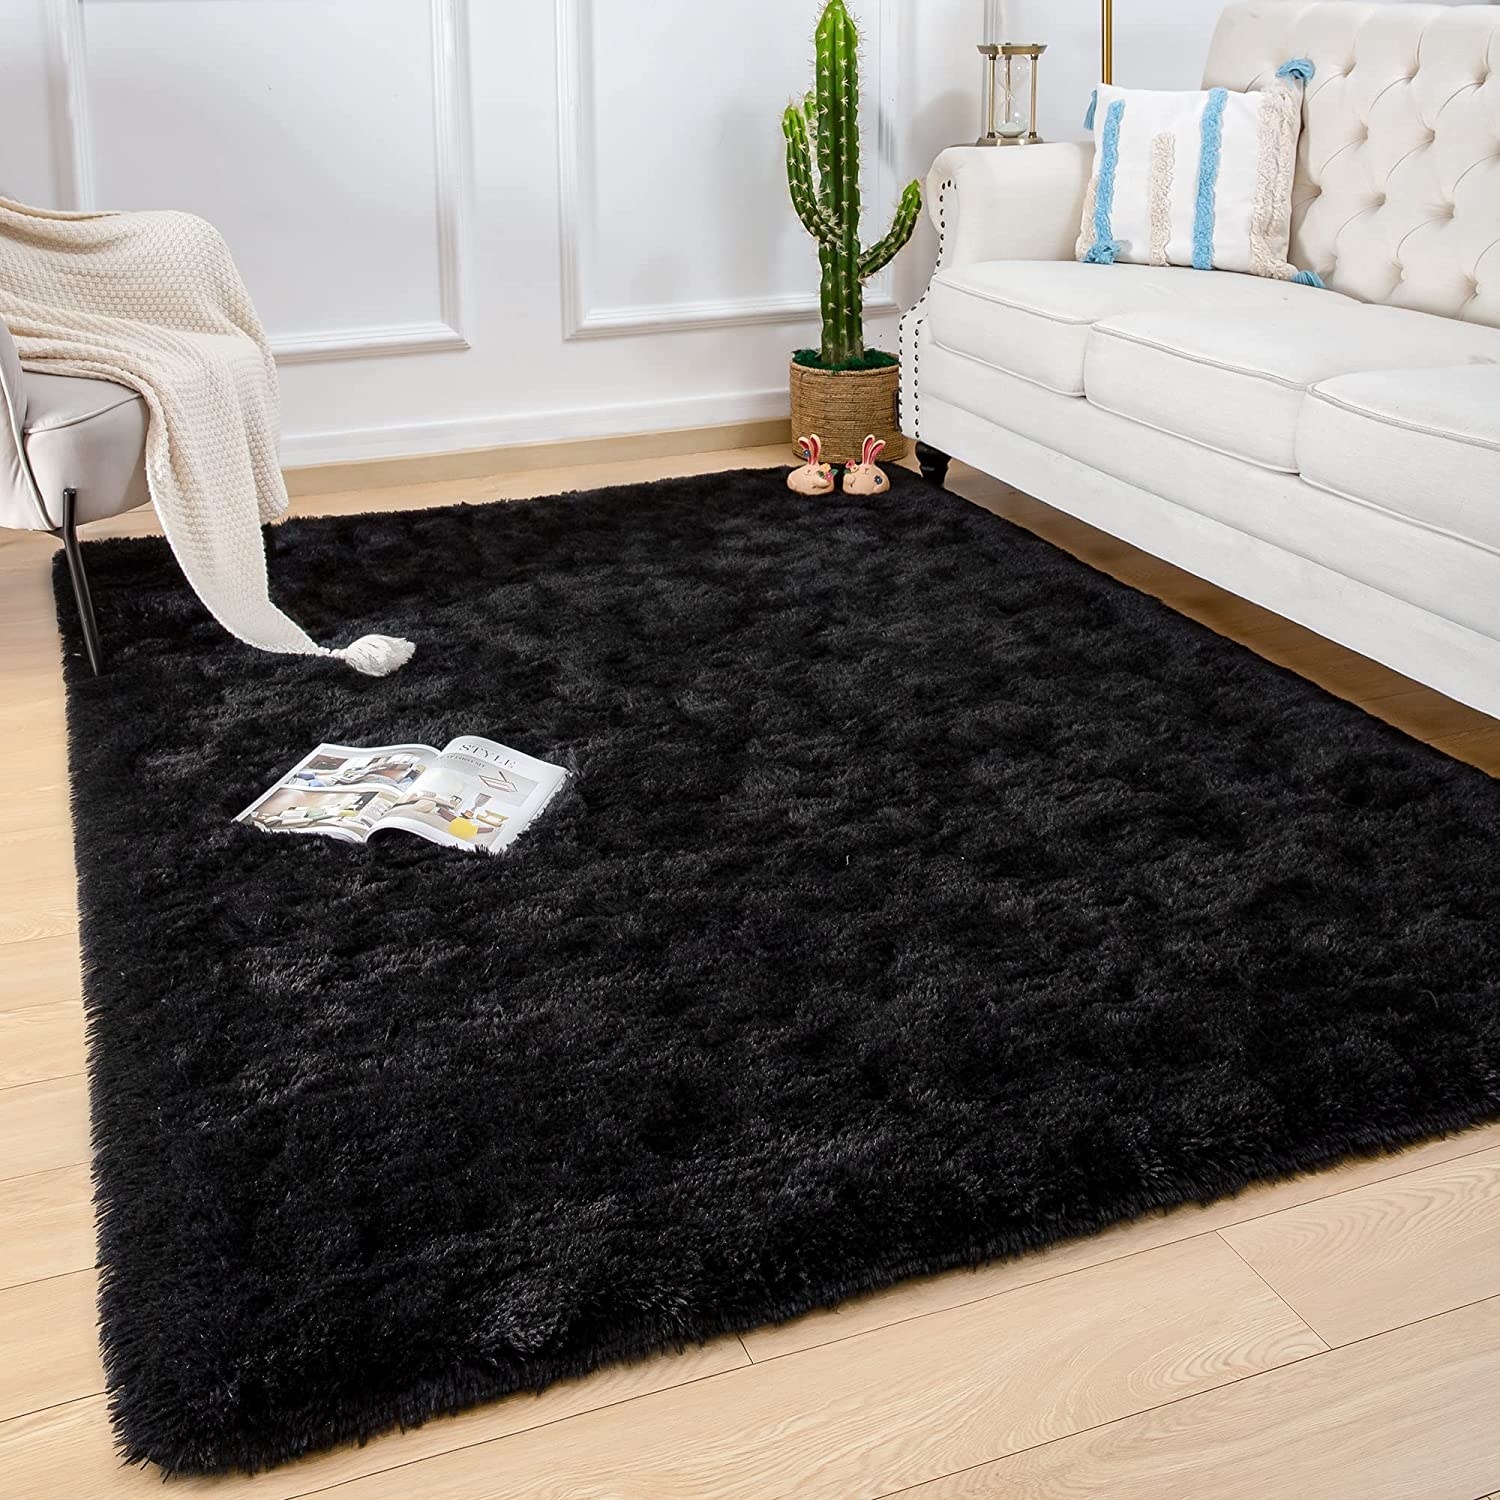 alfombra de felpa suave y pelo largo color negro